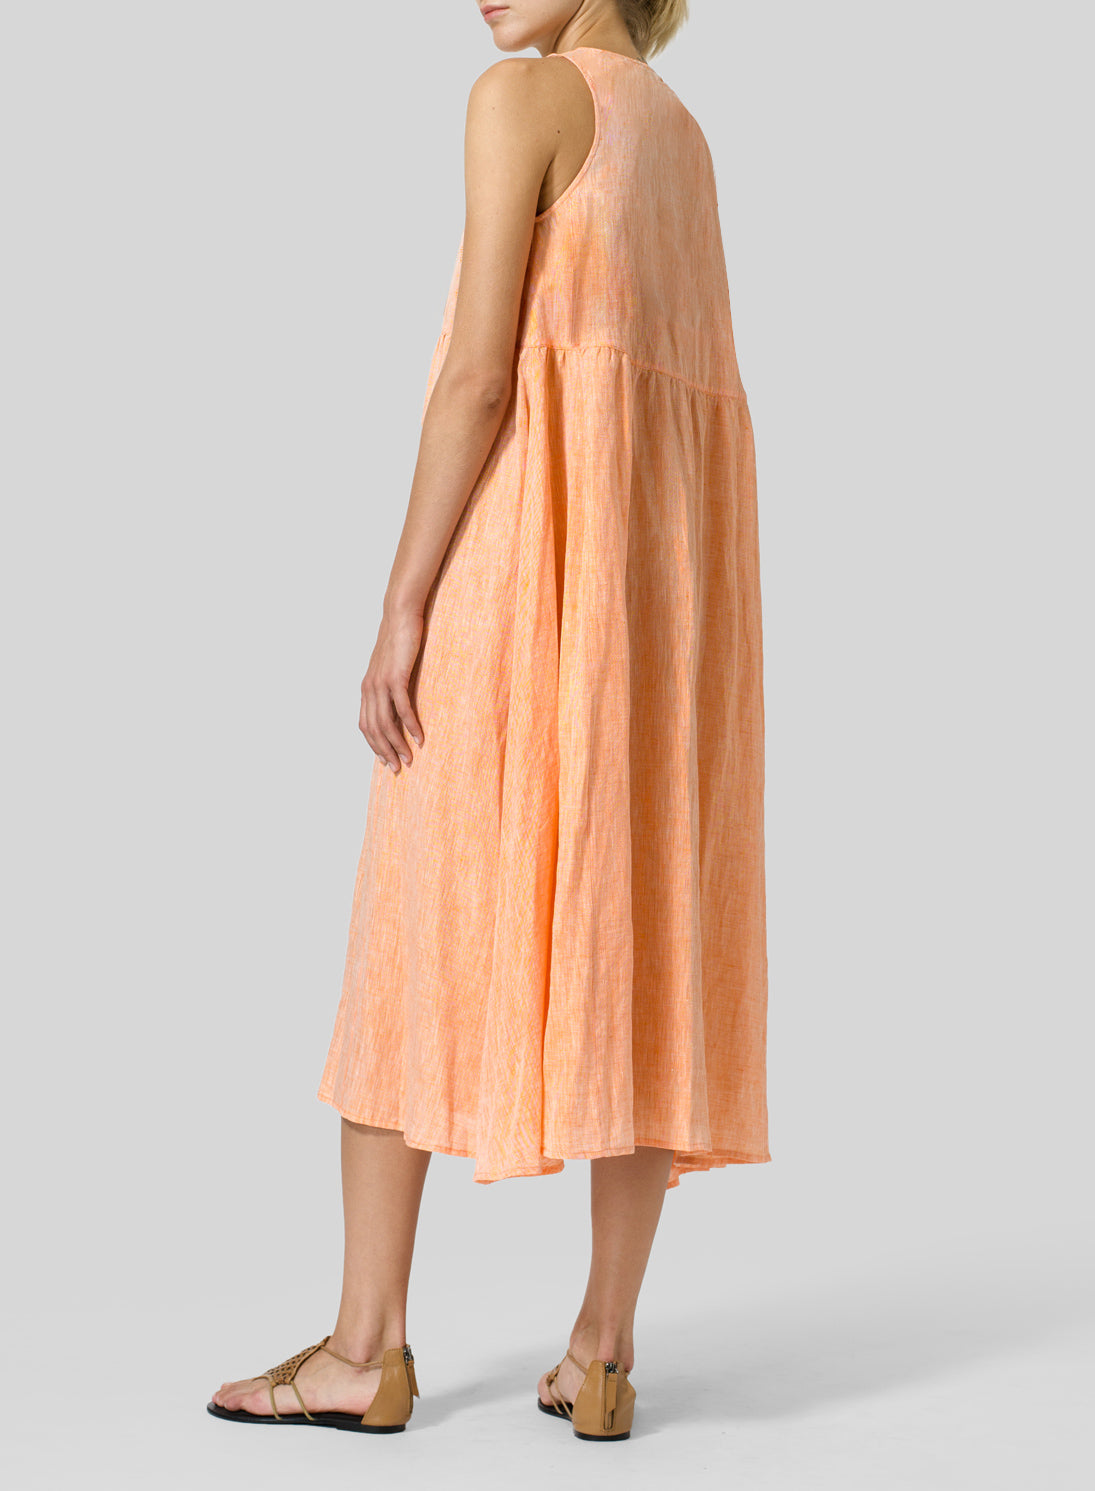 Cotton Linen Sleeveless A-Line Dress - boddysize